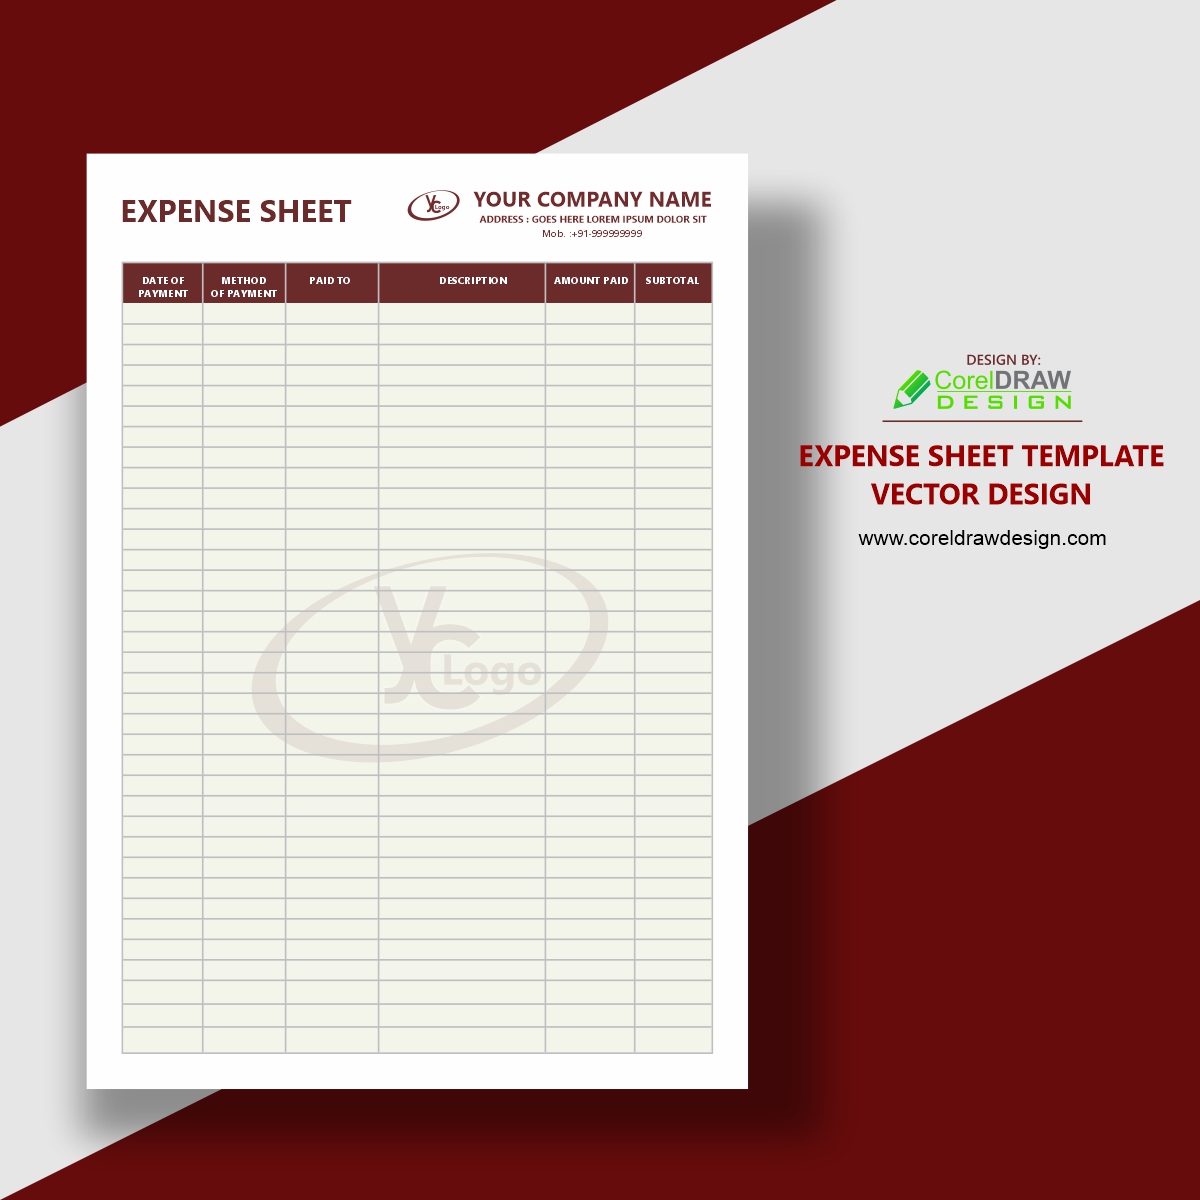 Expense Sheet Template Vector Design